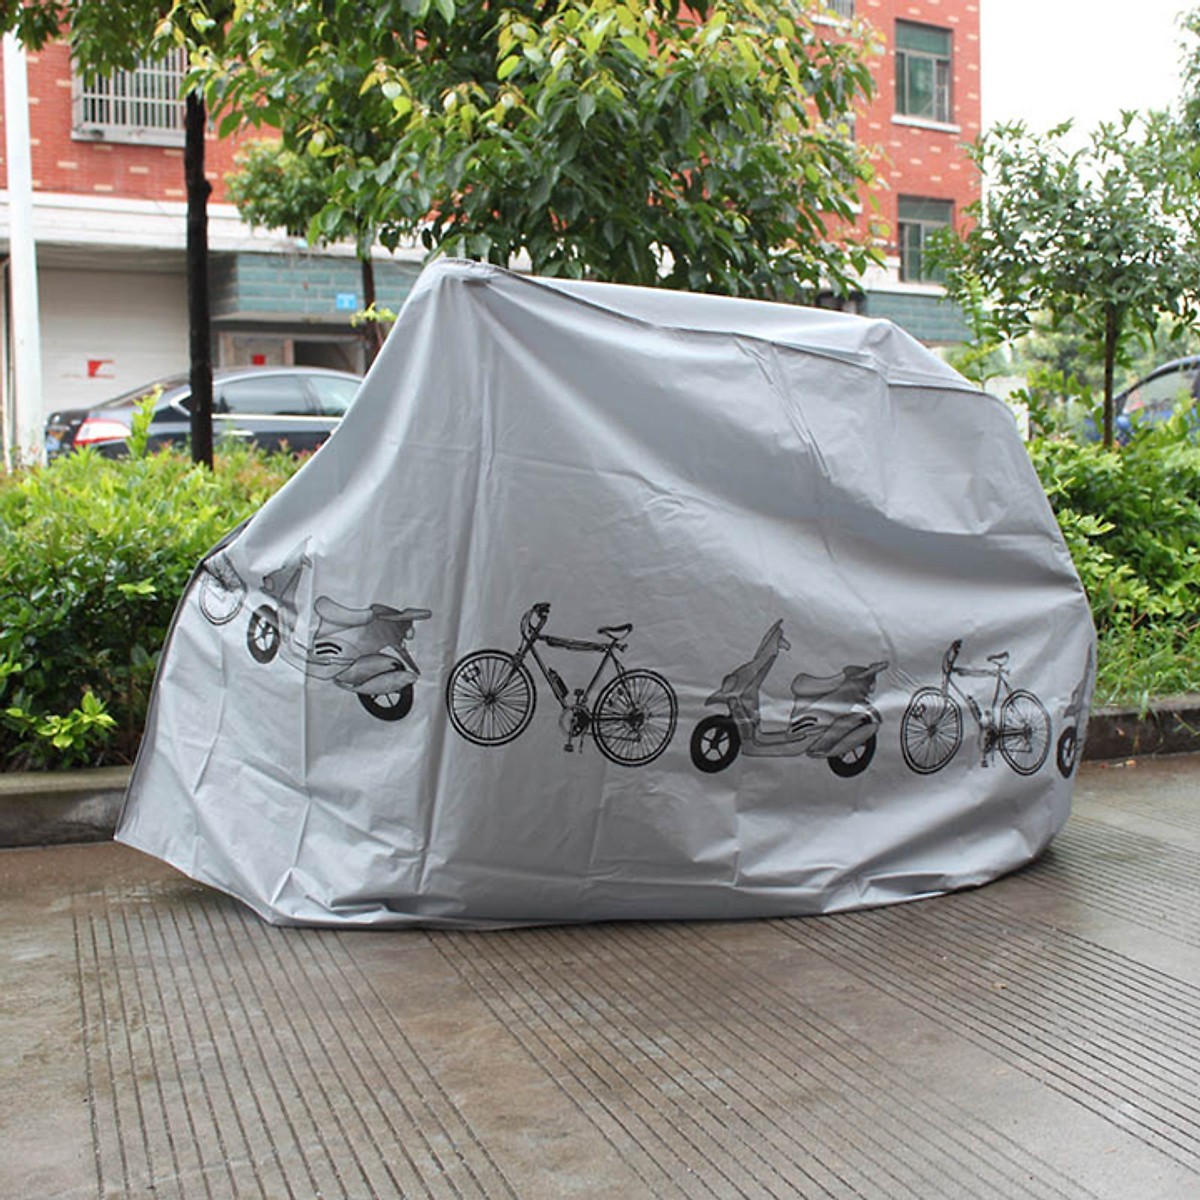 Áo trùm che xe máy chống mưa nắng, bụi từ môi trường có in hình độc đáo, chất liệu vải Polyeste chống thấm nước siêu bền đẹp - Bạt phủ che xe ngoài trời giúp xe bền đẹp kích thước 200x110x60cm